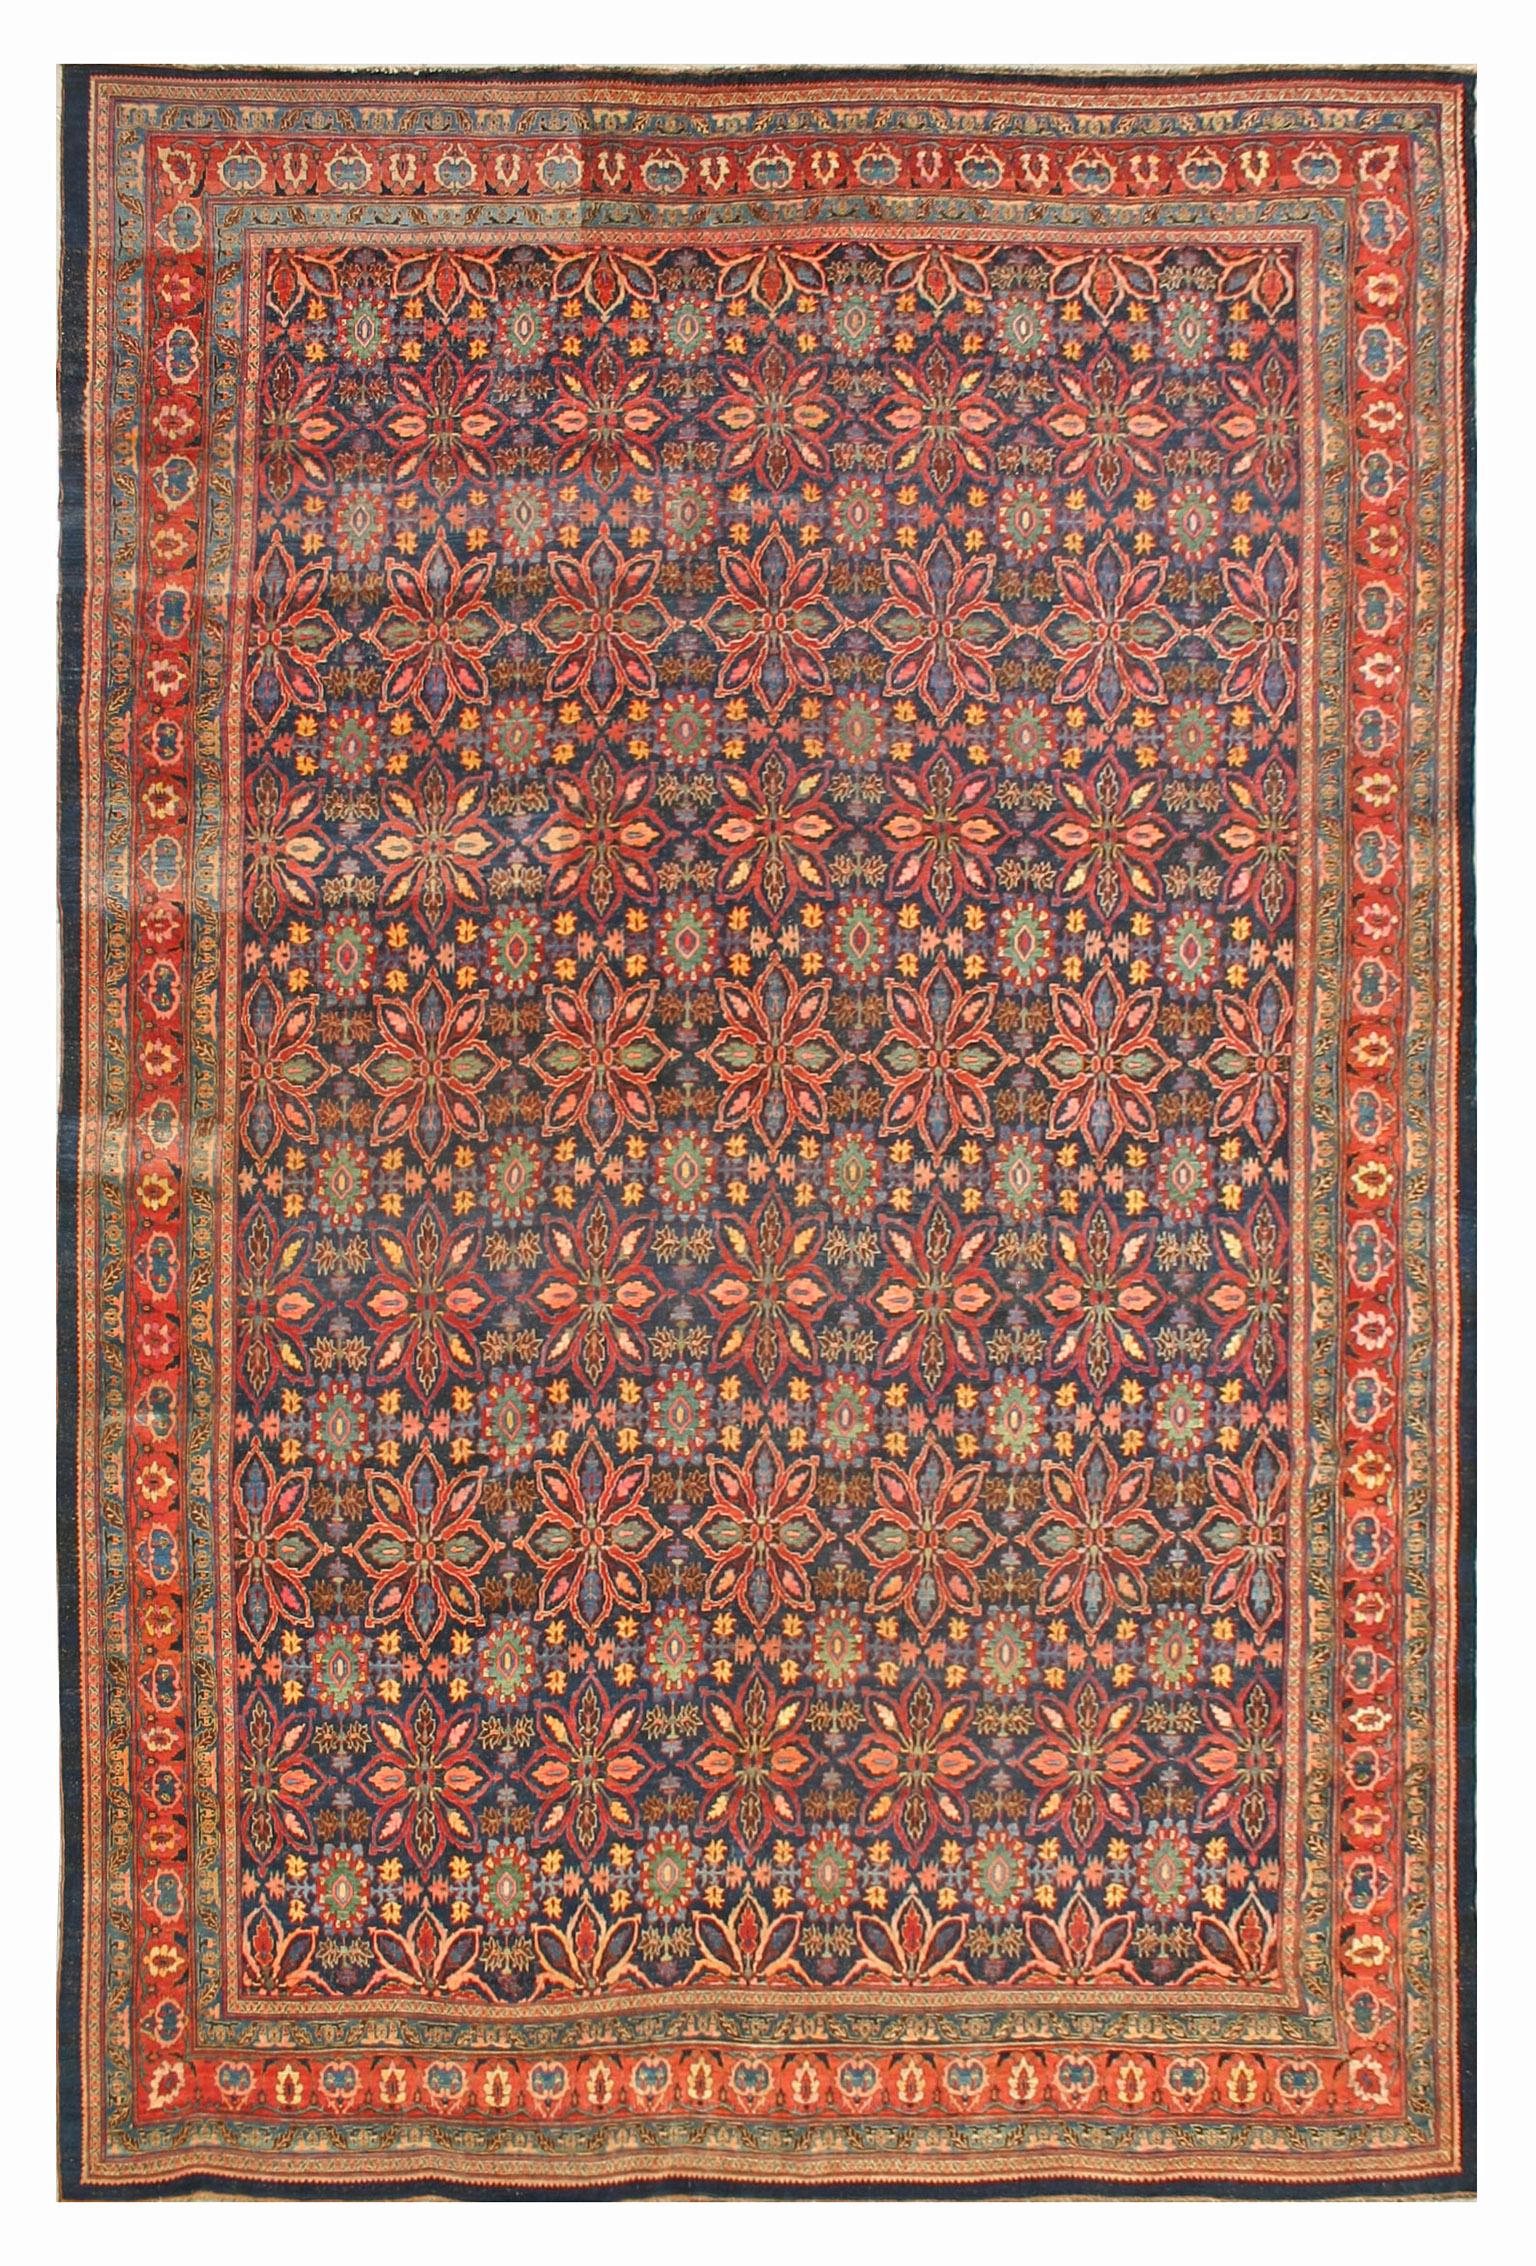 19th Century W. Persian Bijar Carpet ( 15'8" x 23'8" - 478 x 722 )